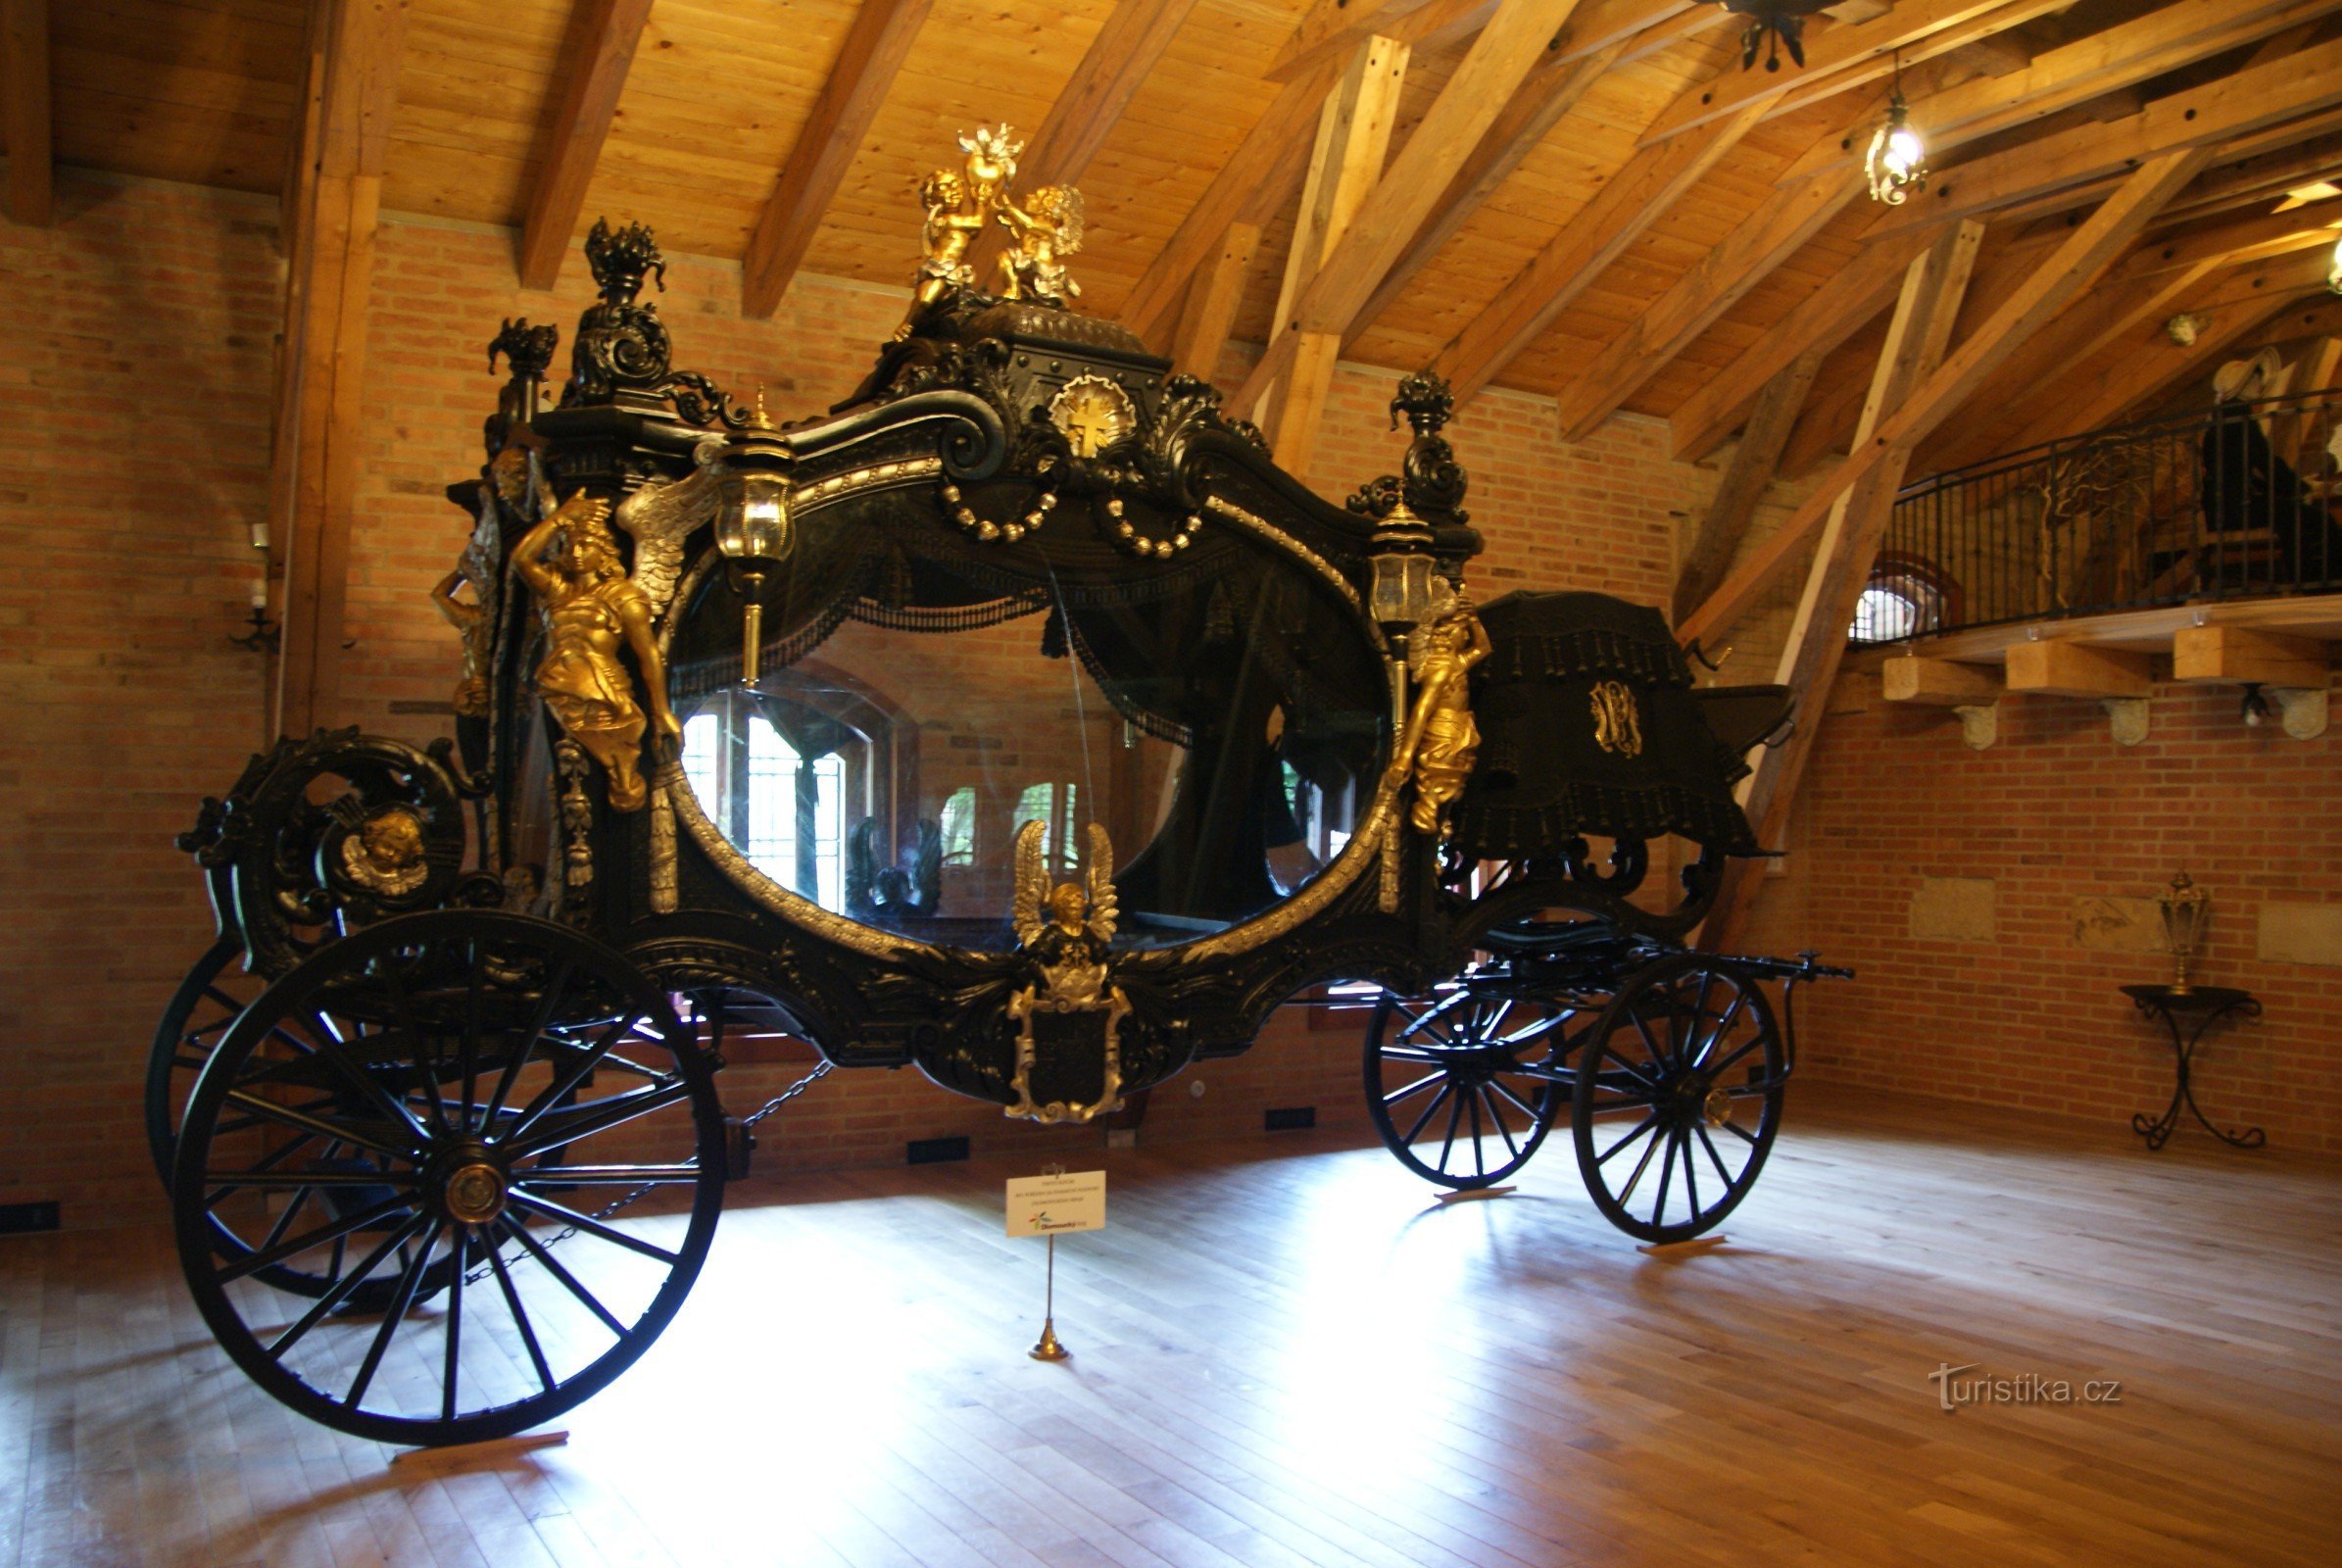 Bohemen onder Kosíř - de grootste lijkwagen ter wereld (koetsmuseum)